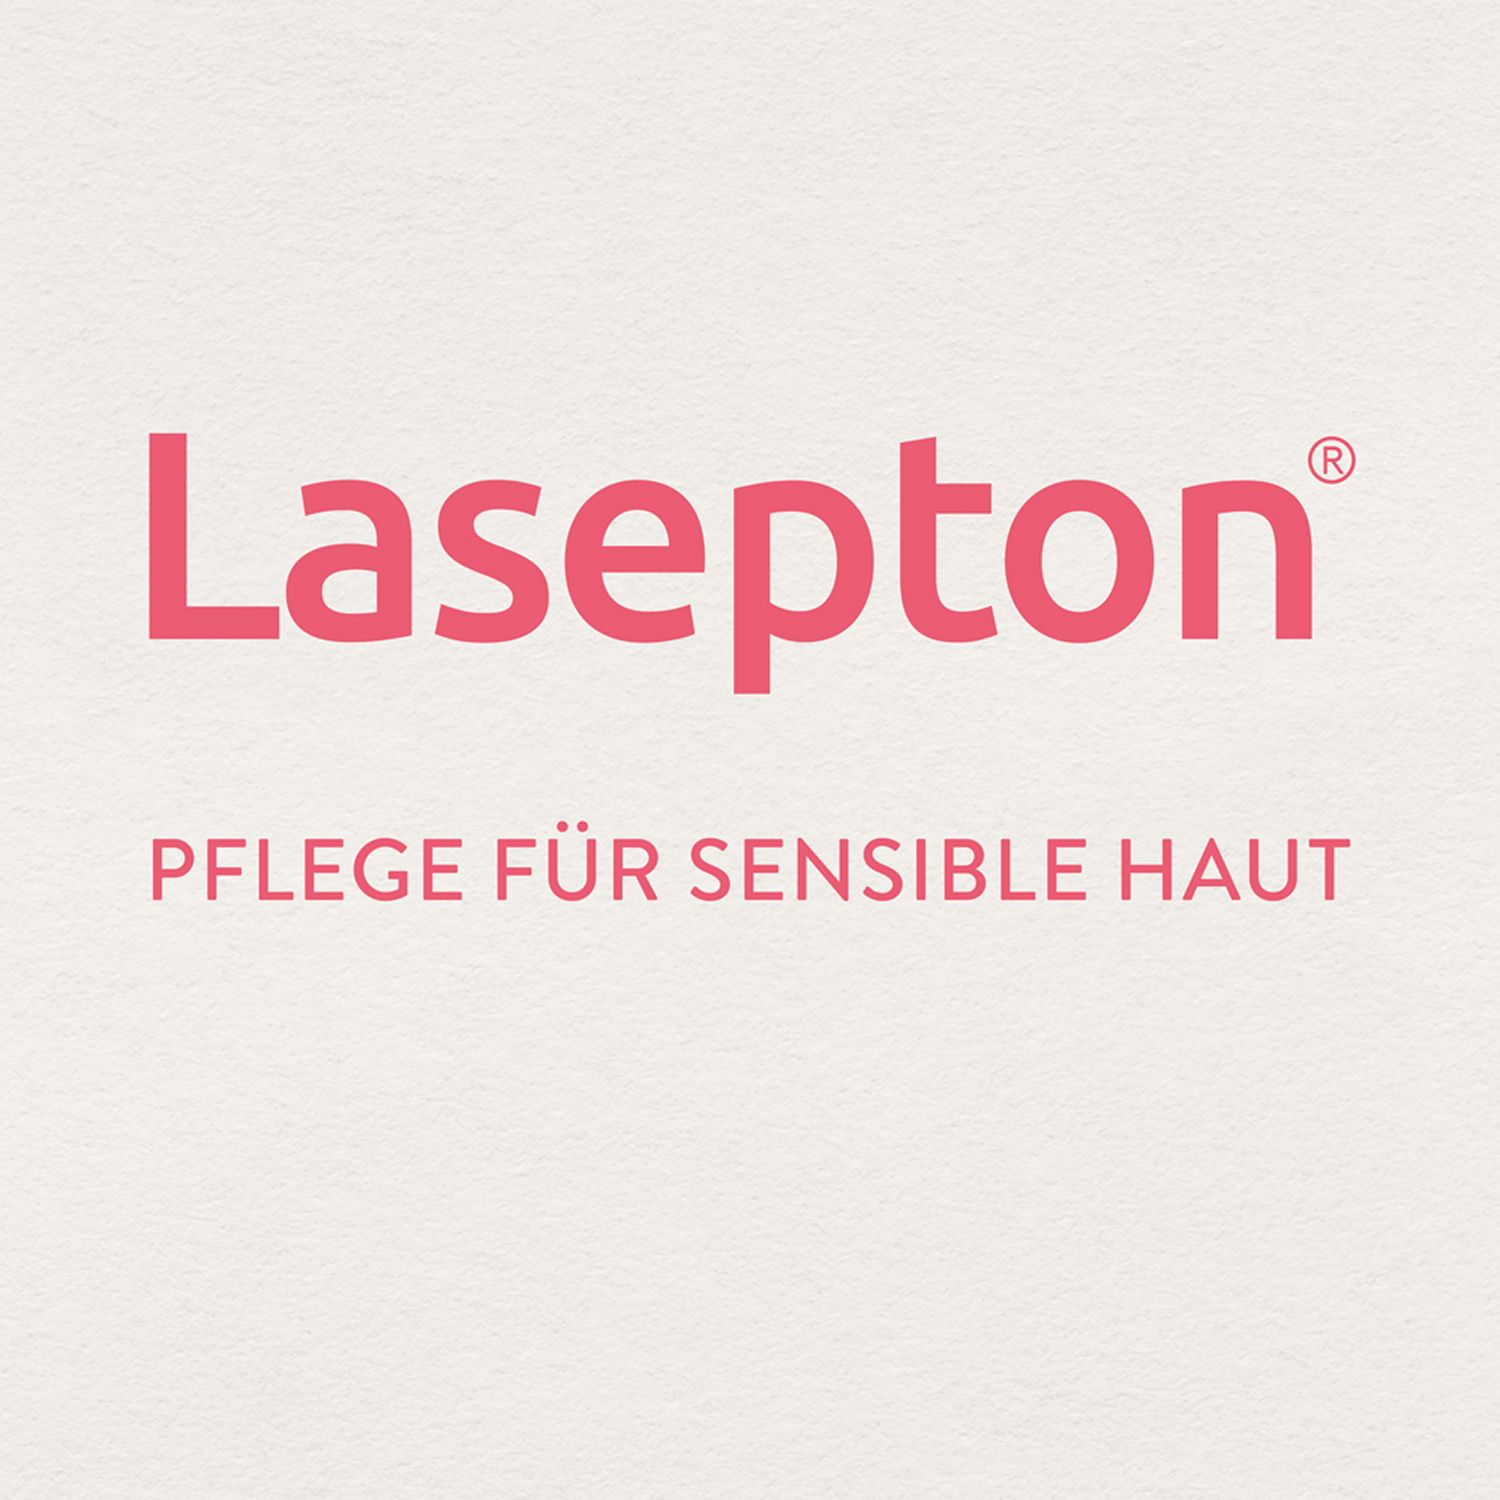 Lasepton® Körper-Lotion Lipid